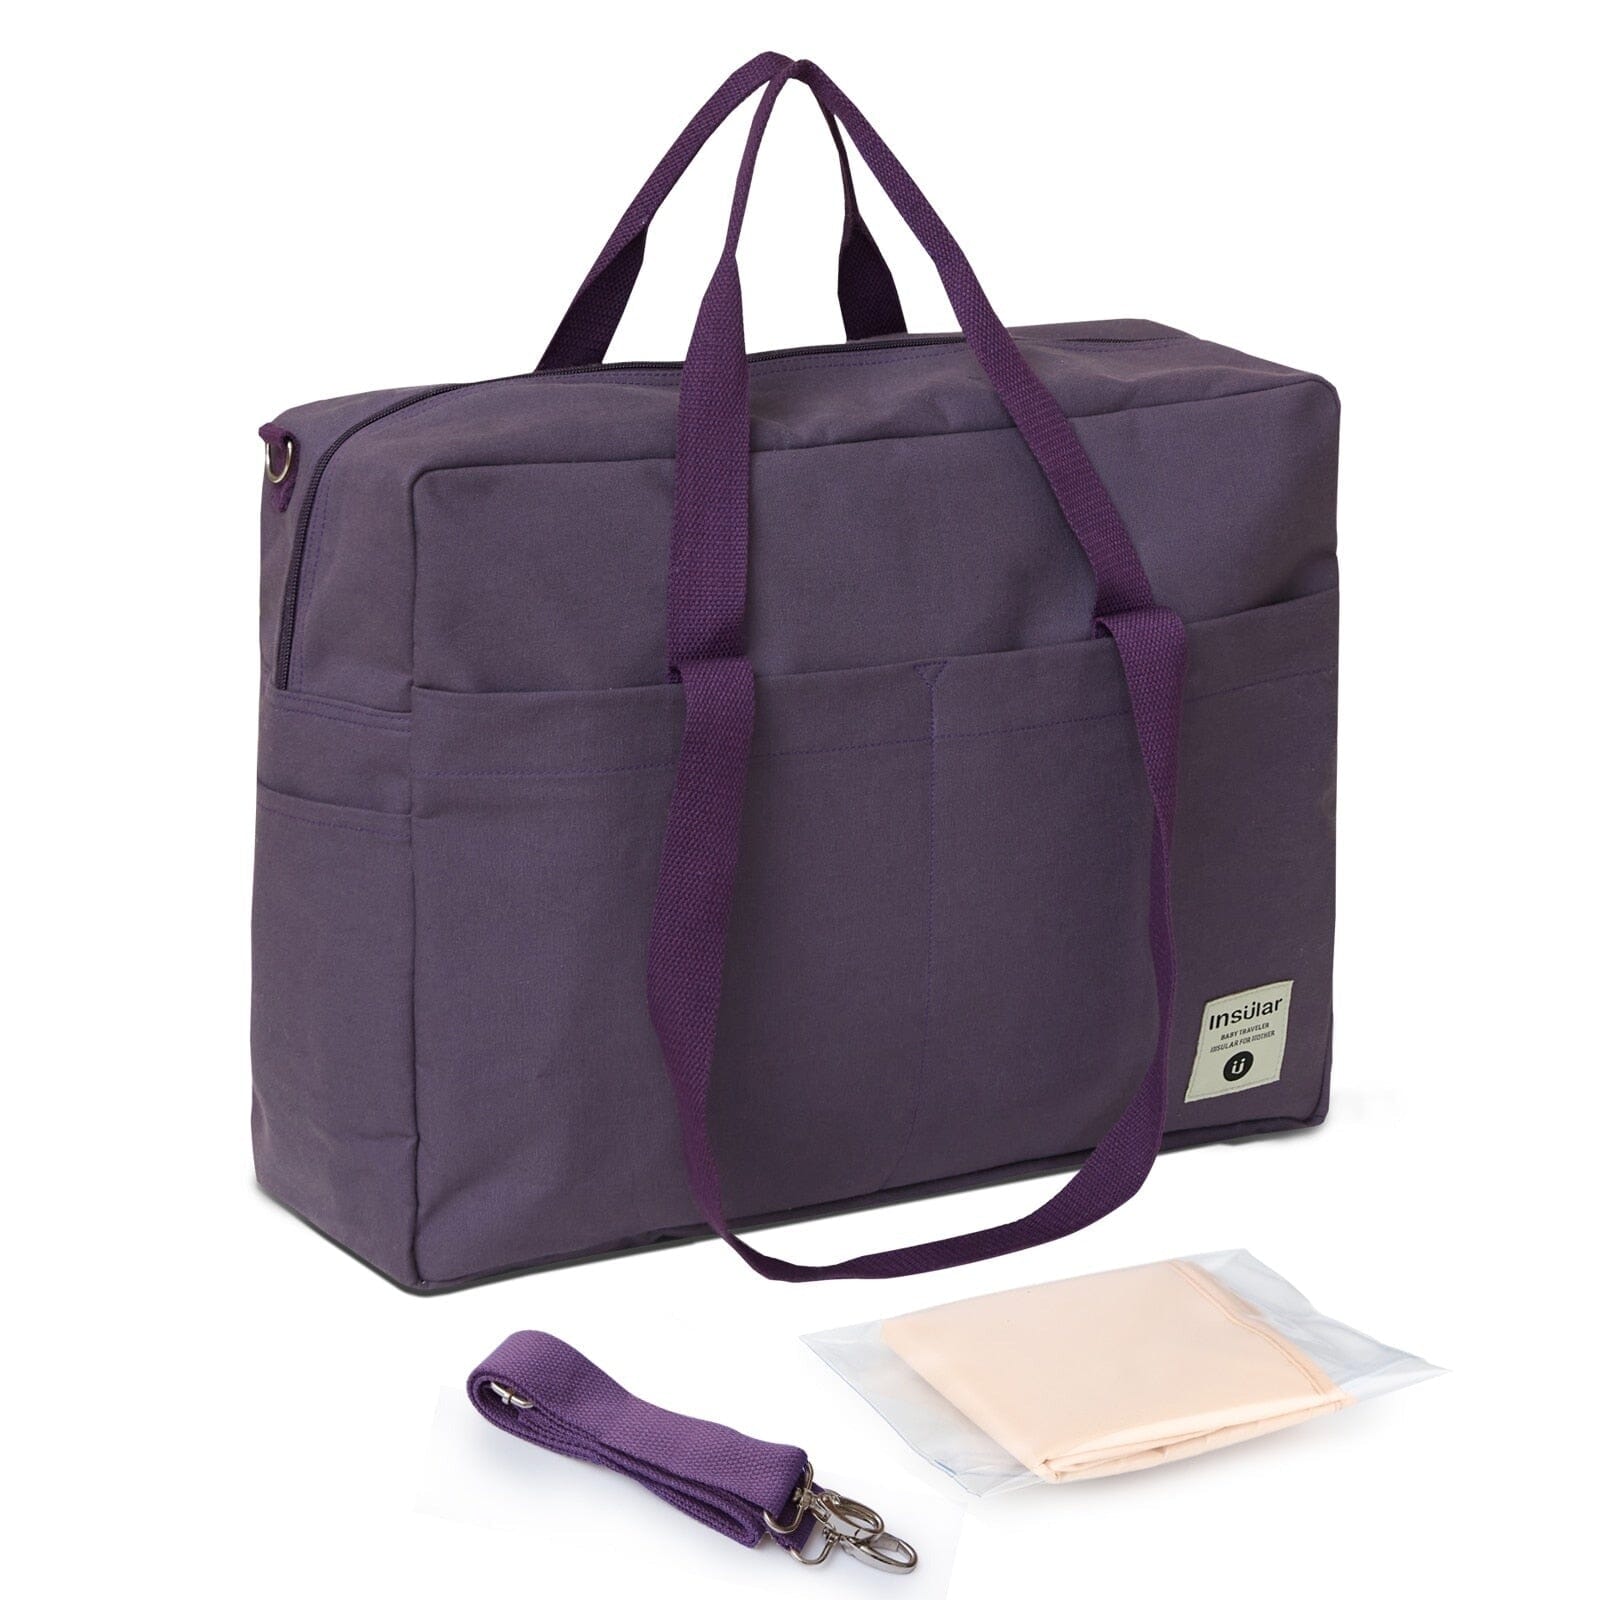 Lequeen Baby Handbag The Store Bags Purple 